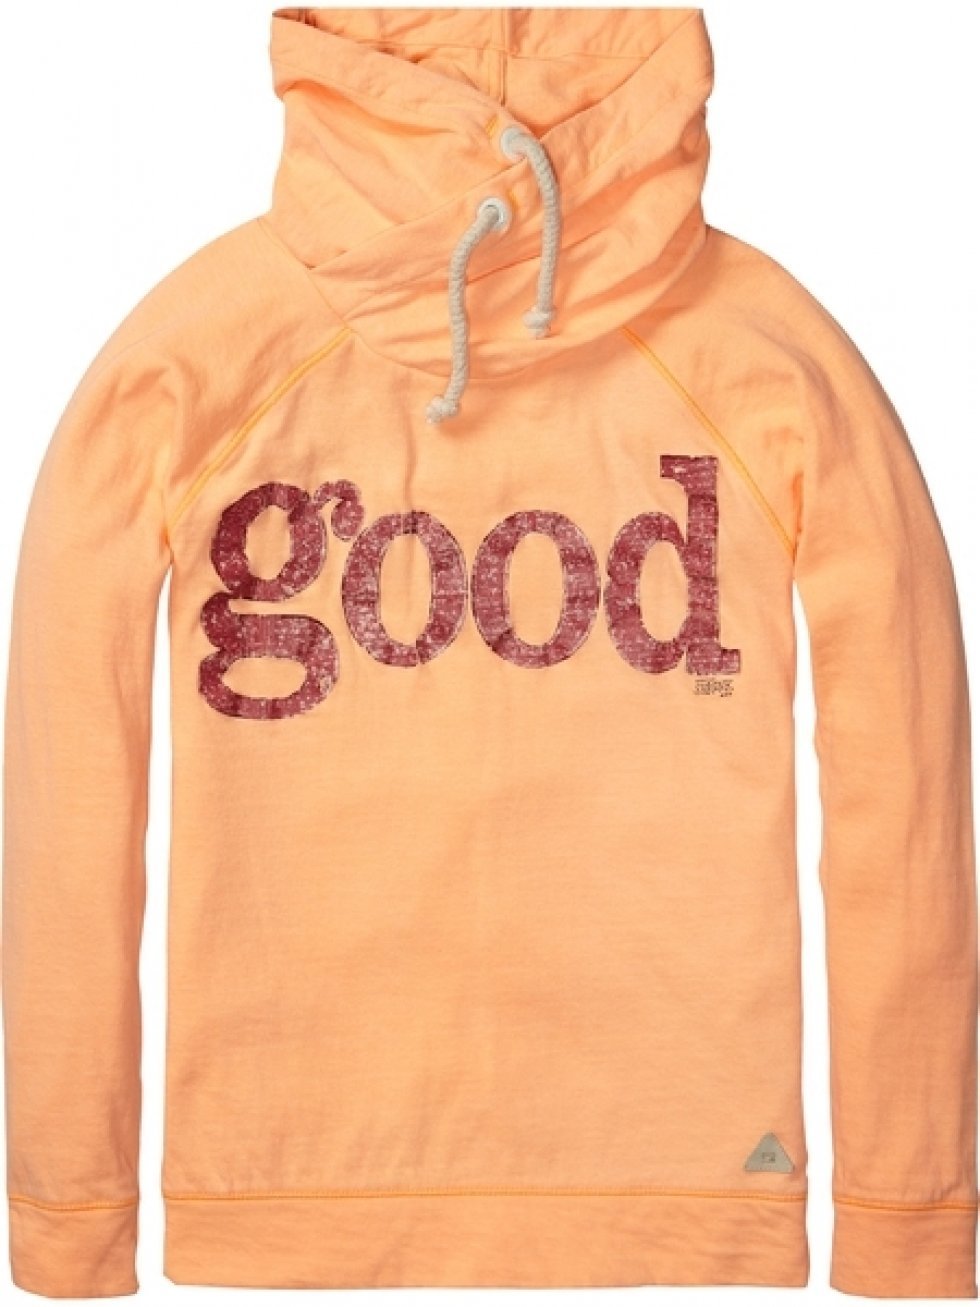 Good hoodie fra Scotch Shrunk, 499 kr. - Fashion is for Idiots og andre statements til børn